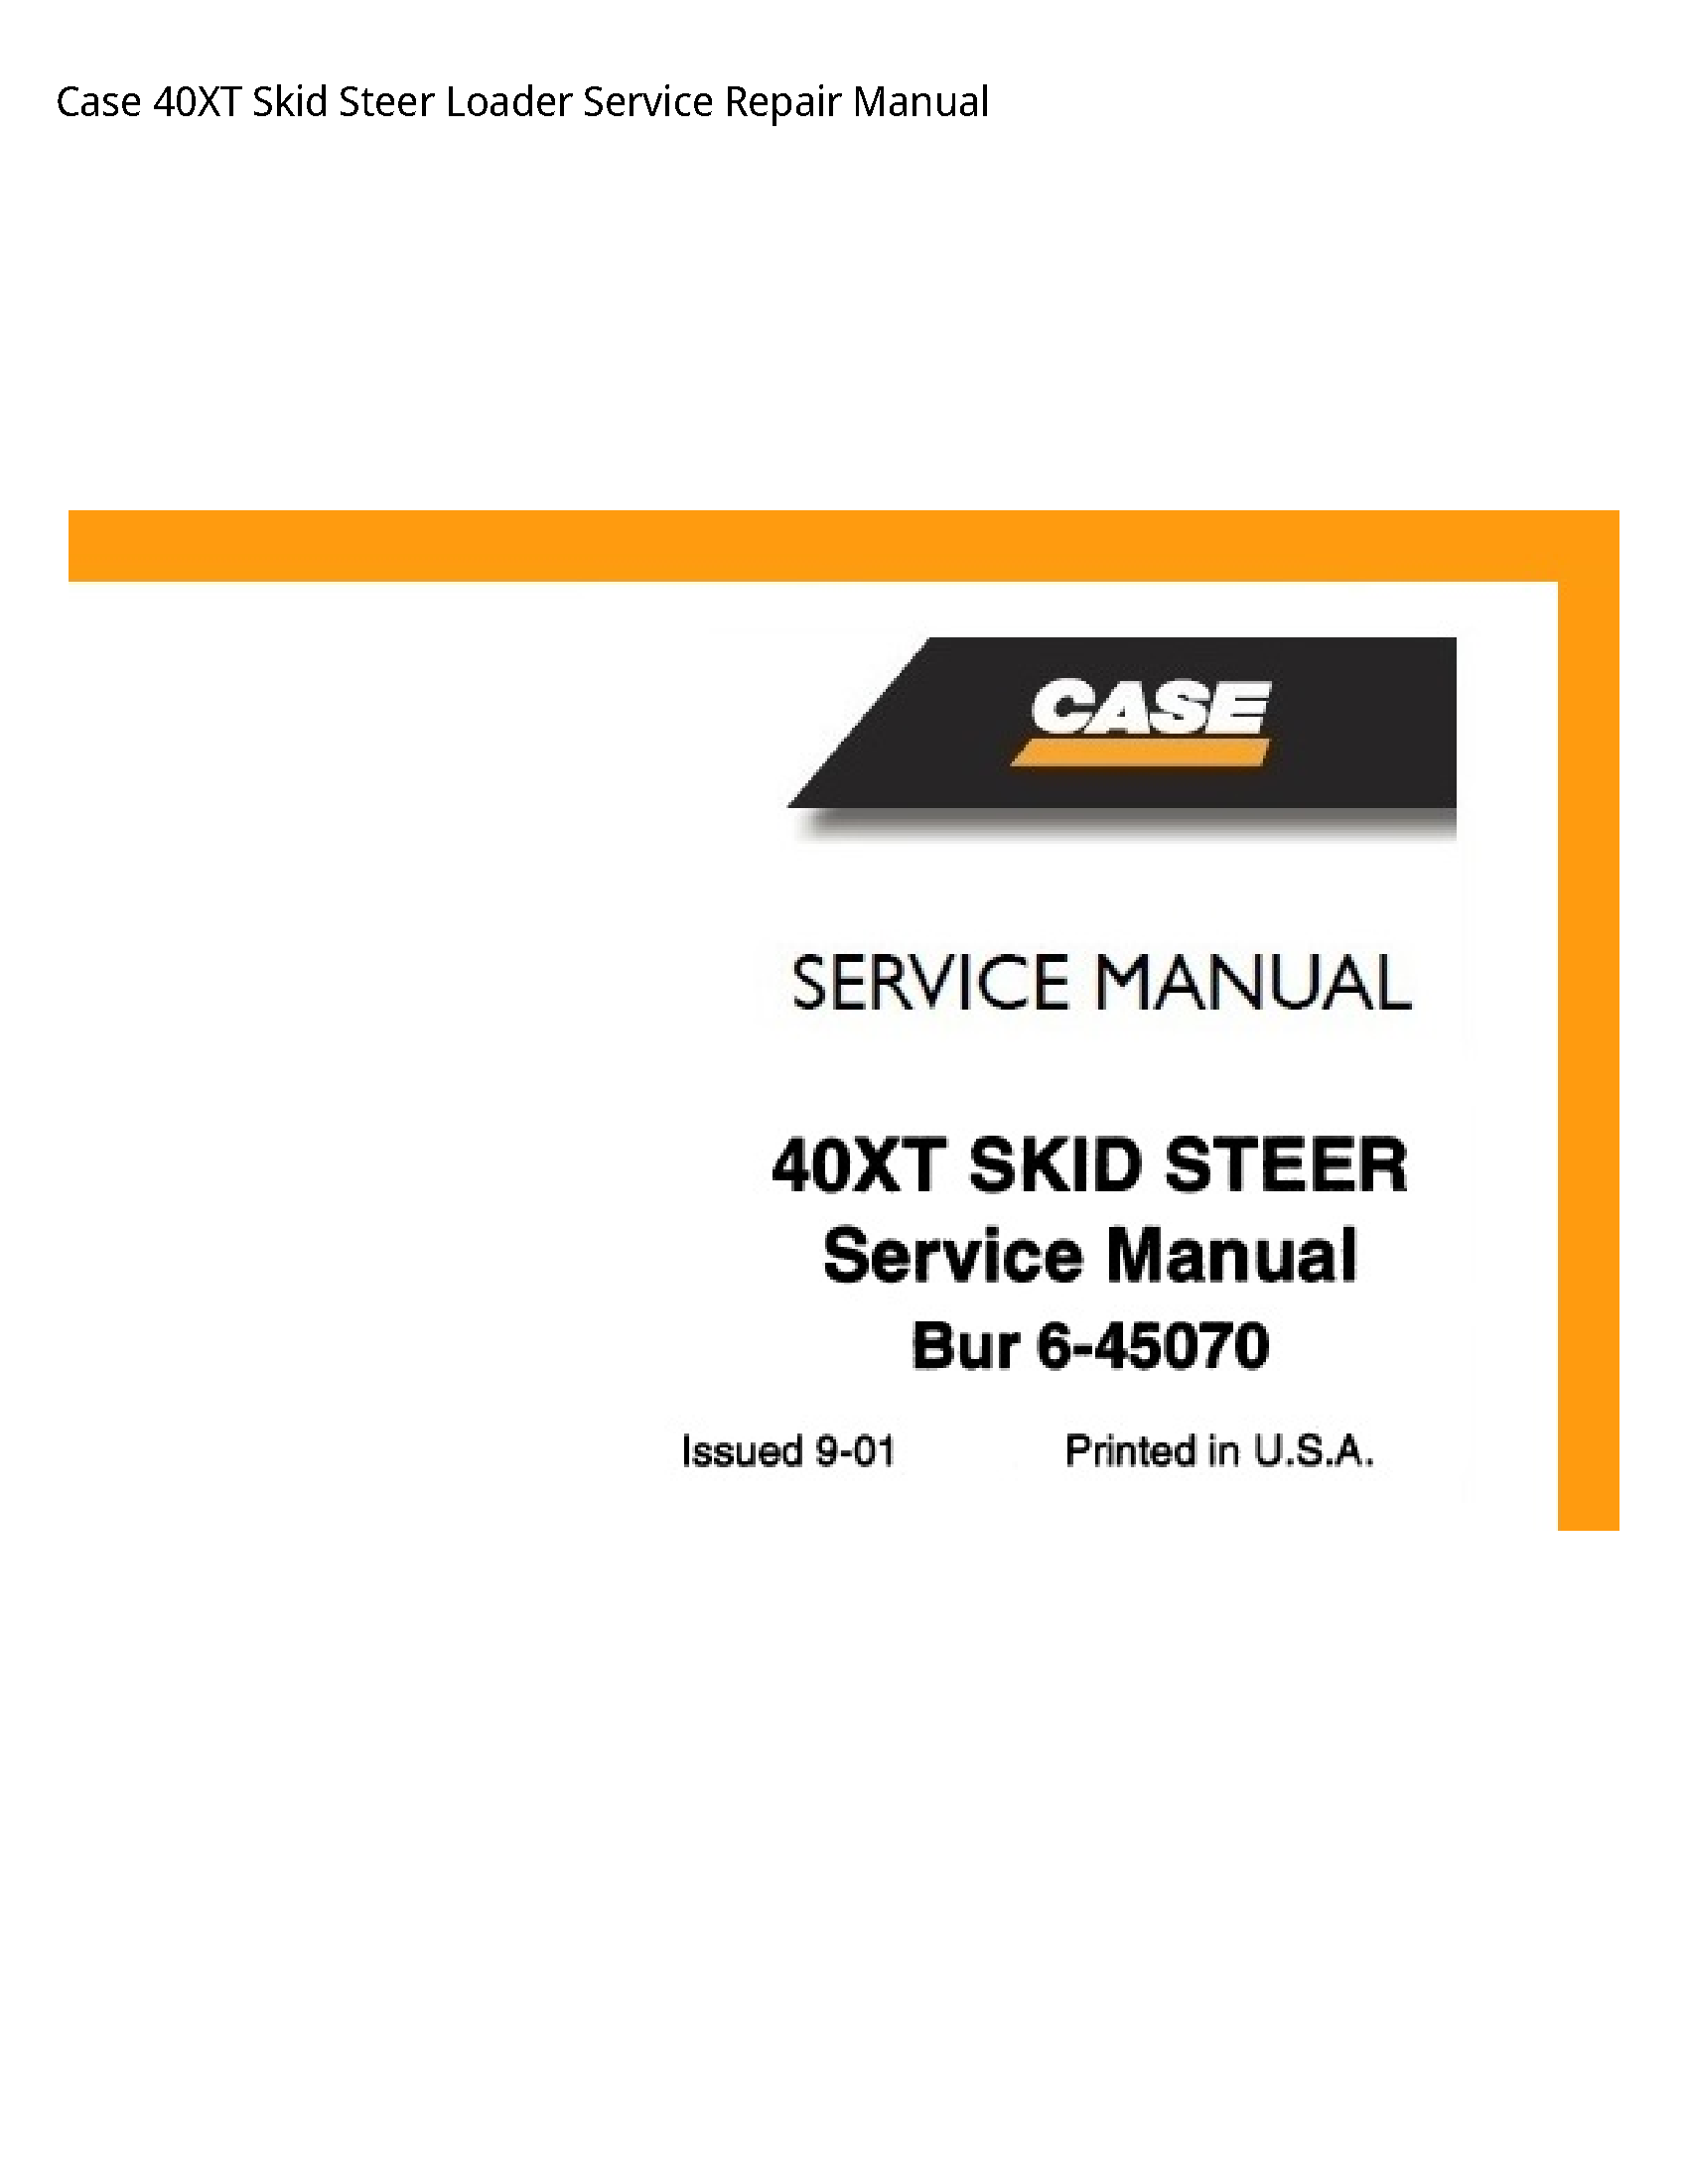 Case/Case IH 40XT Skid Steer Loader manual